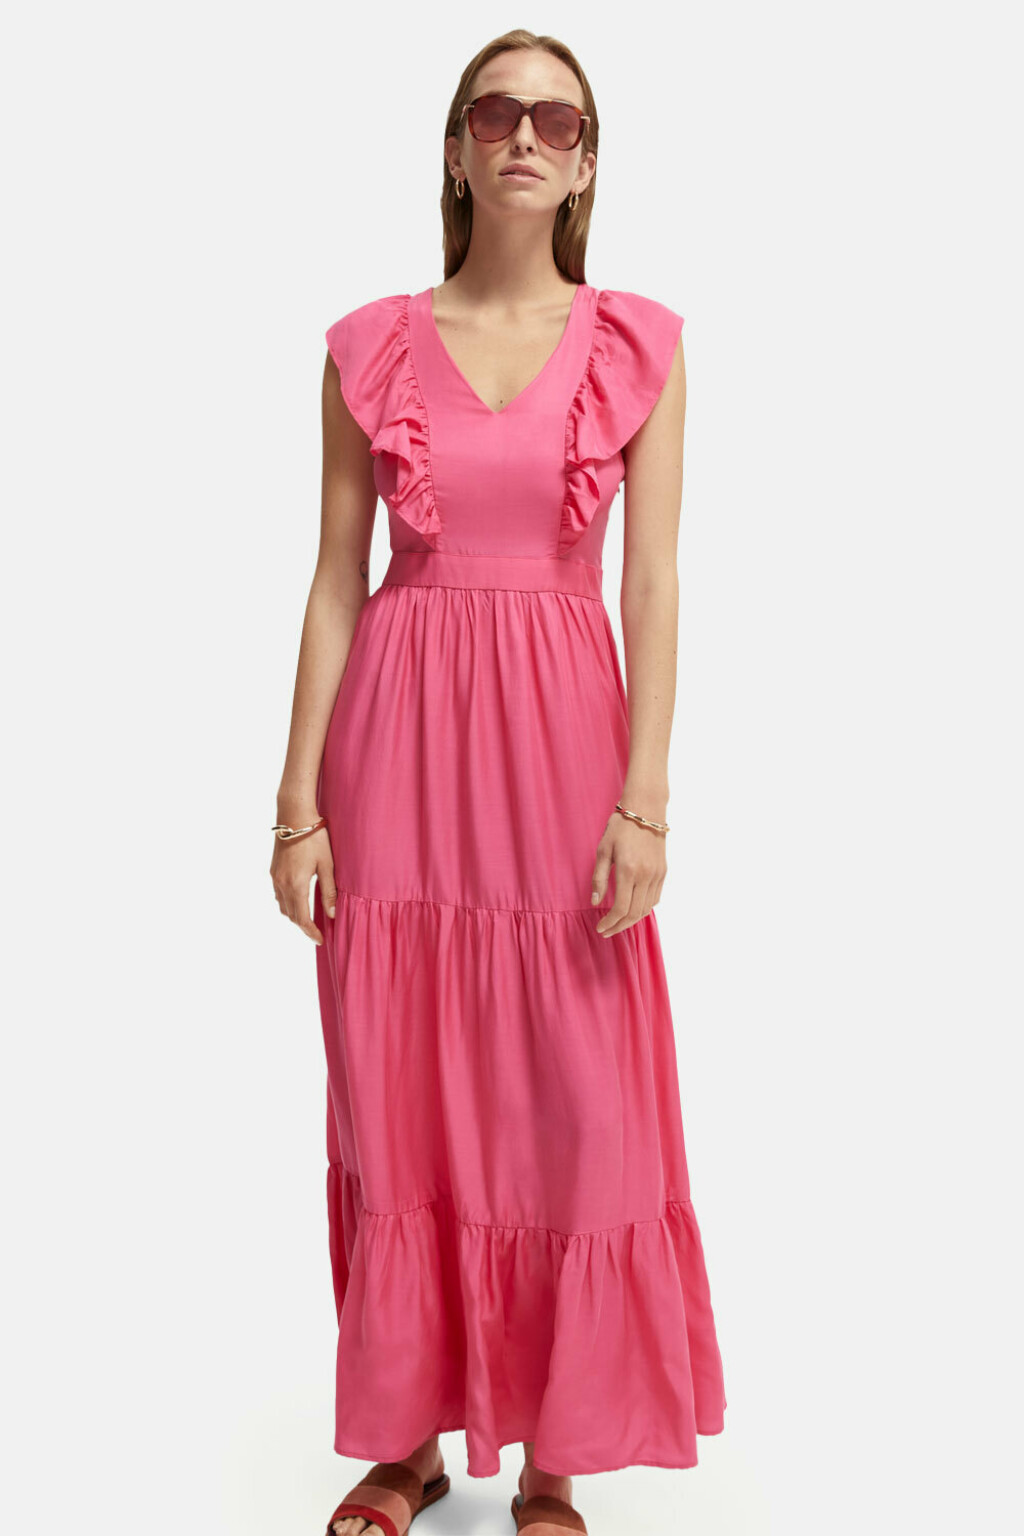 Ponuda ružičastih haljina u trgovinama - 9